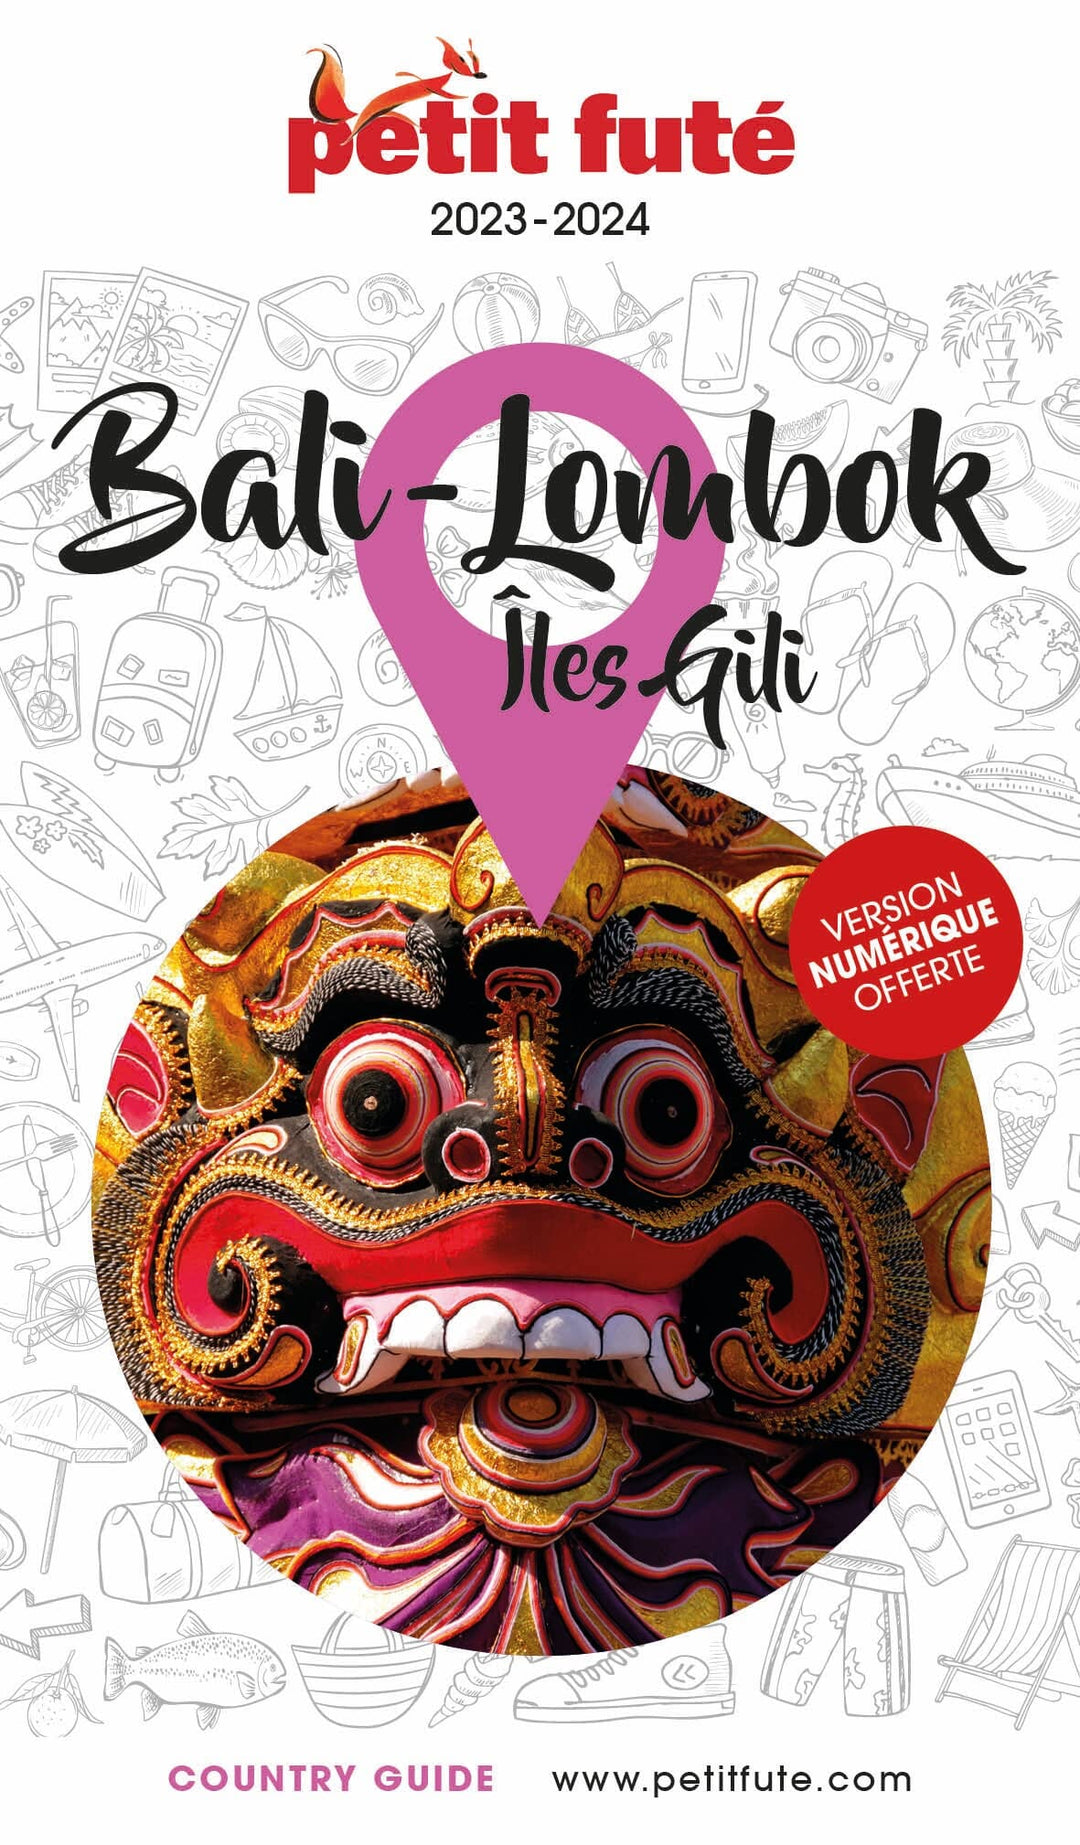 Guide de voyage - Bali, Lombok, îles Gili 2023/24 | Petit Futé guide de voyage Petit Futé 